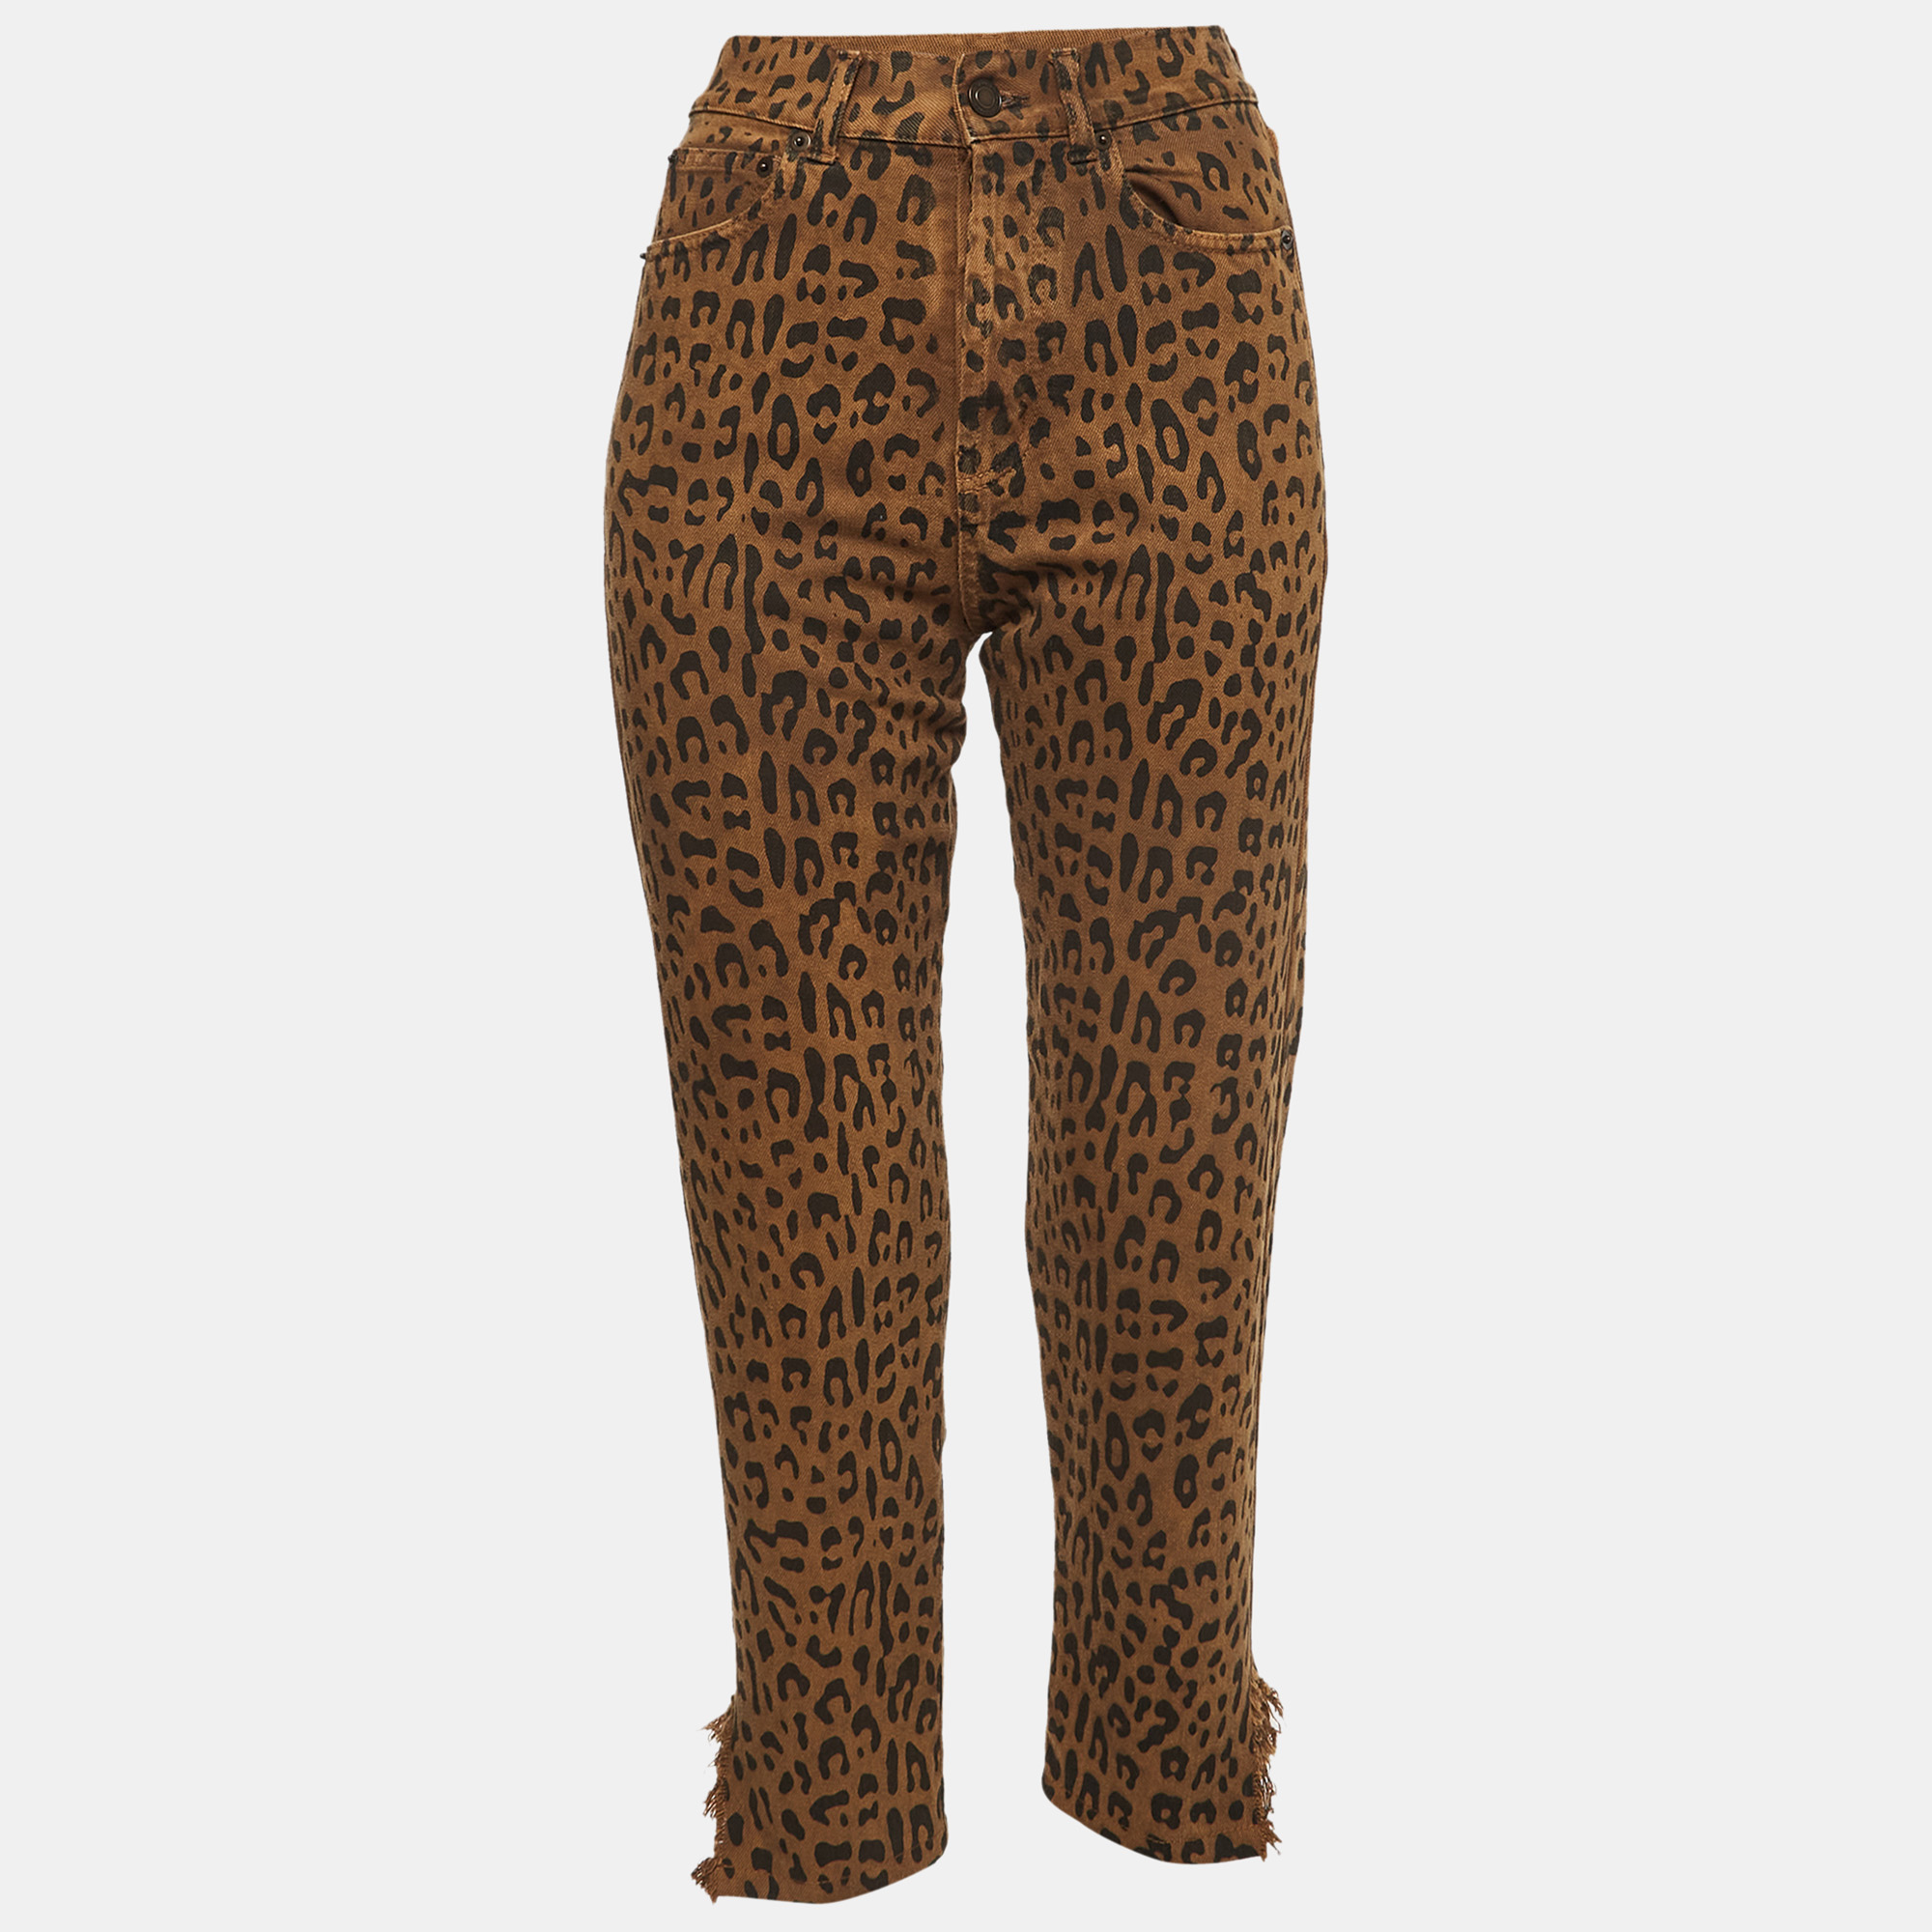 Saint laurent paris saint laurent brown leopard print ripped denim mid-rise jeans s waist 25''